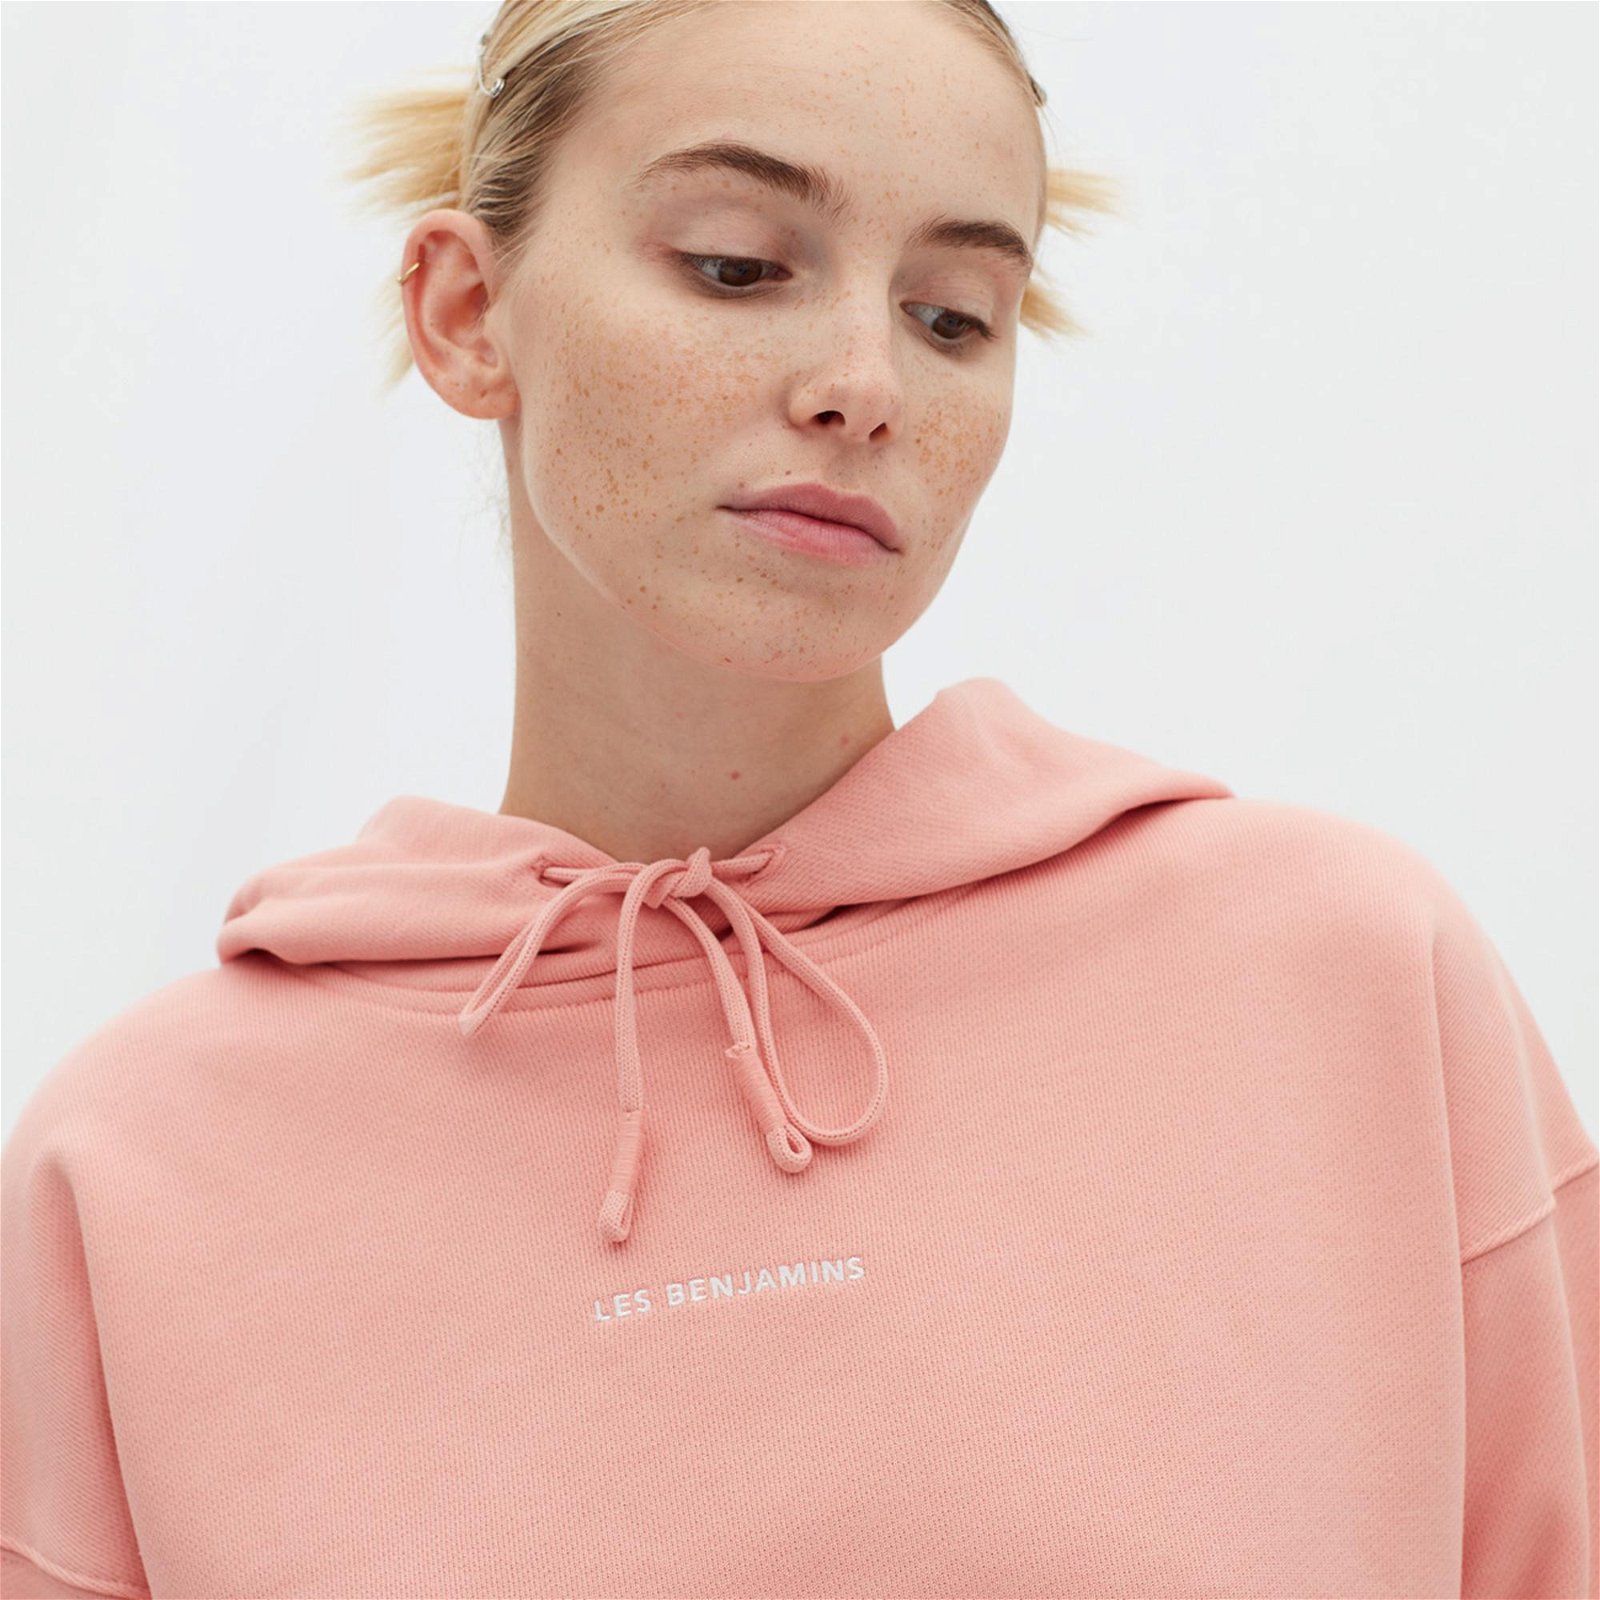 Les Benjamins Essentials Kadın Pembe Hoodie Sweatshirt